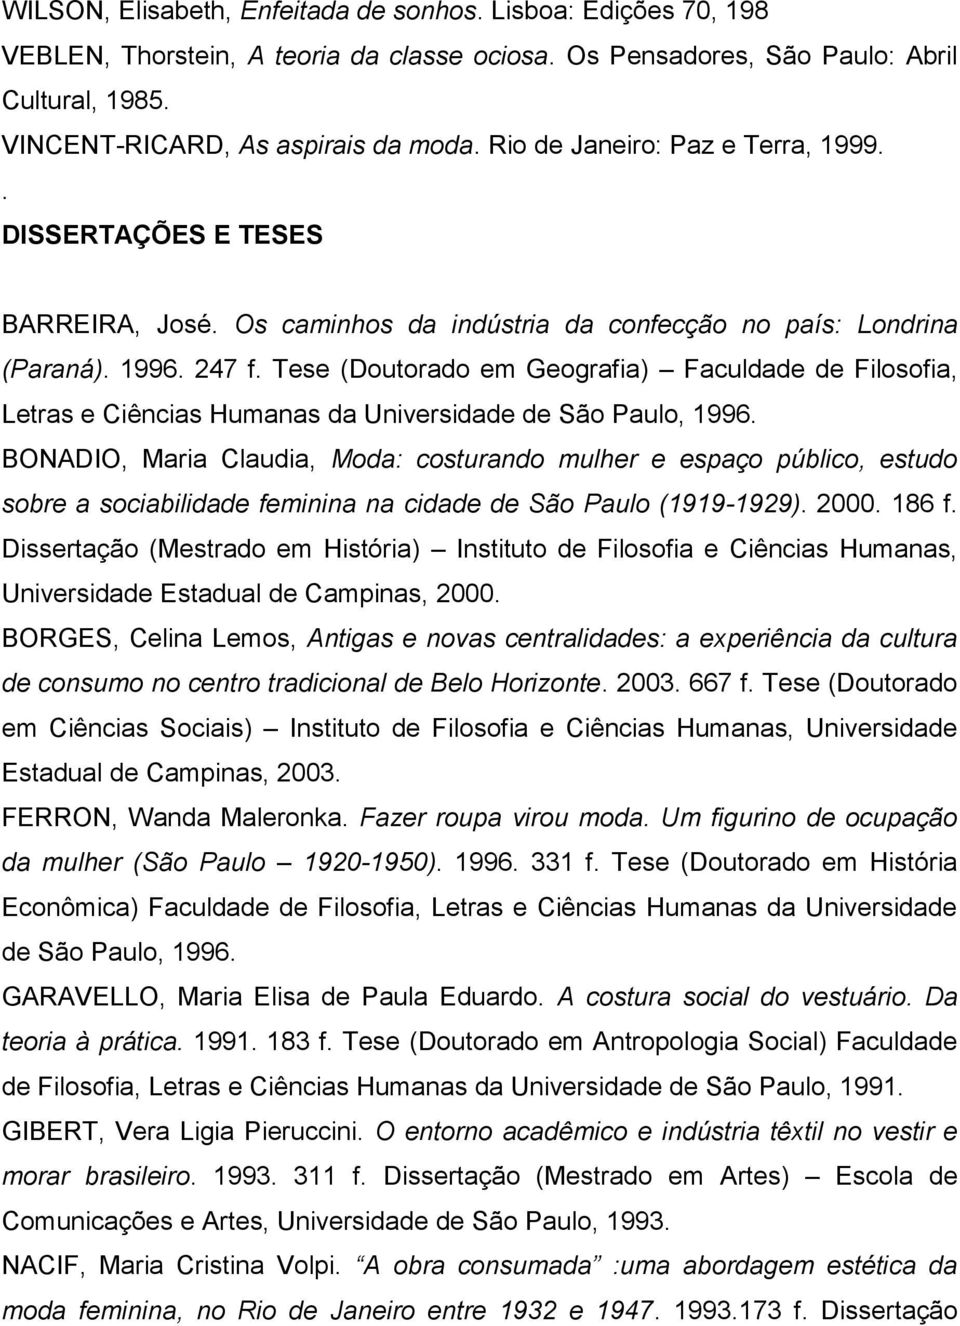 Tese (Doutorado em Geografia) Faculdade de Filosofia, Letras e Ciências Humanas da Universidade de São Paulo, 1996.